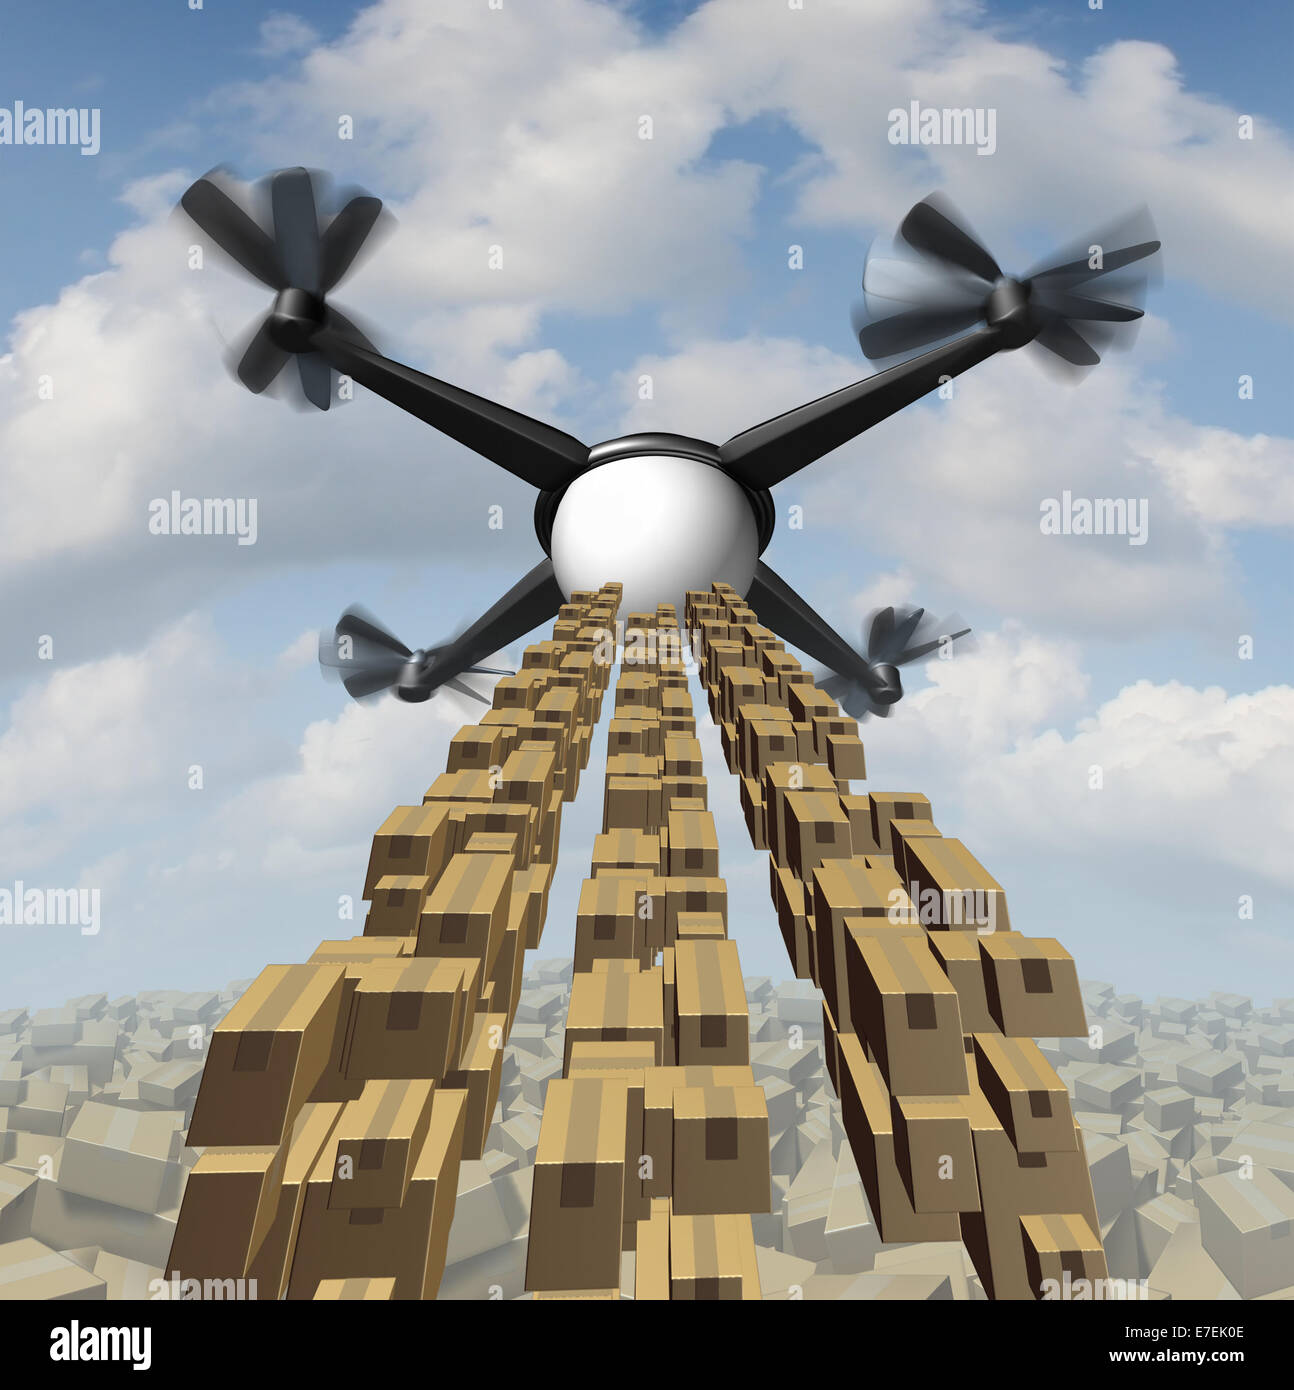 Drone consegna merci nozione come un drone quadrocopter confezioni per la spedizione e il trasporto di merci come un simbolo del futuro del servizio di corriere. Foto Stock